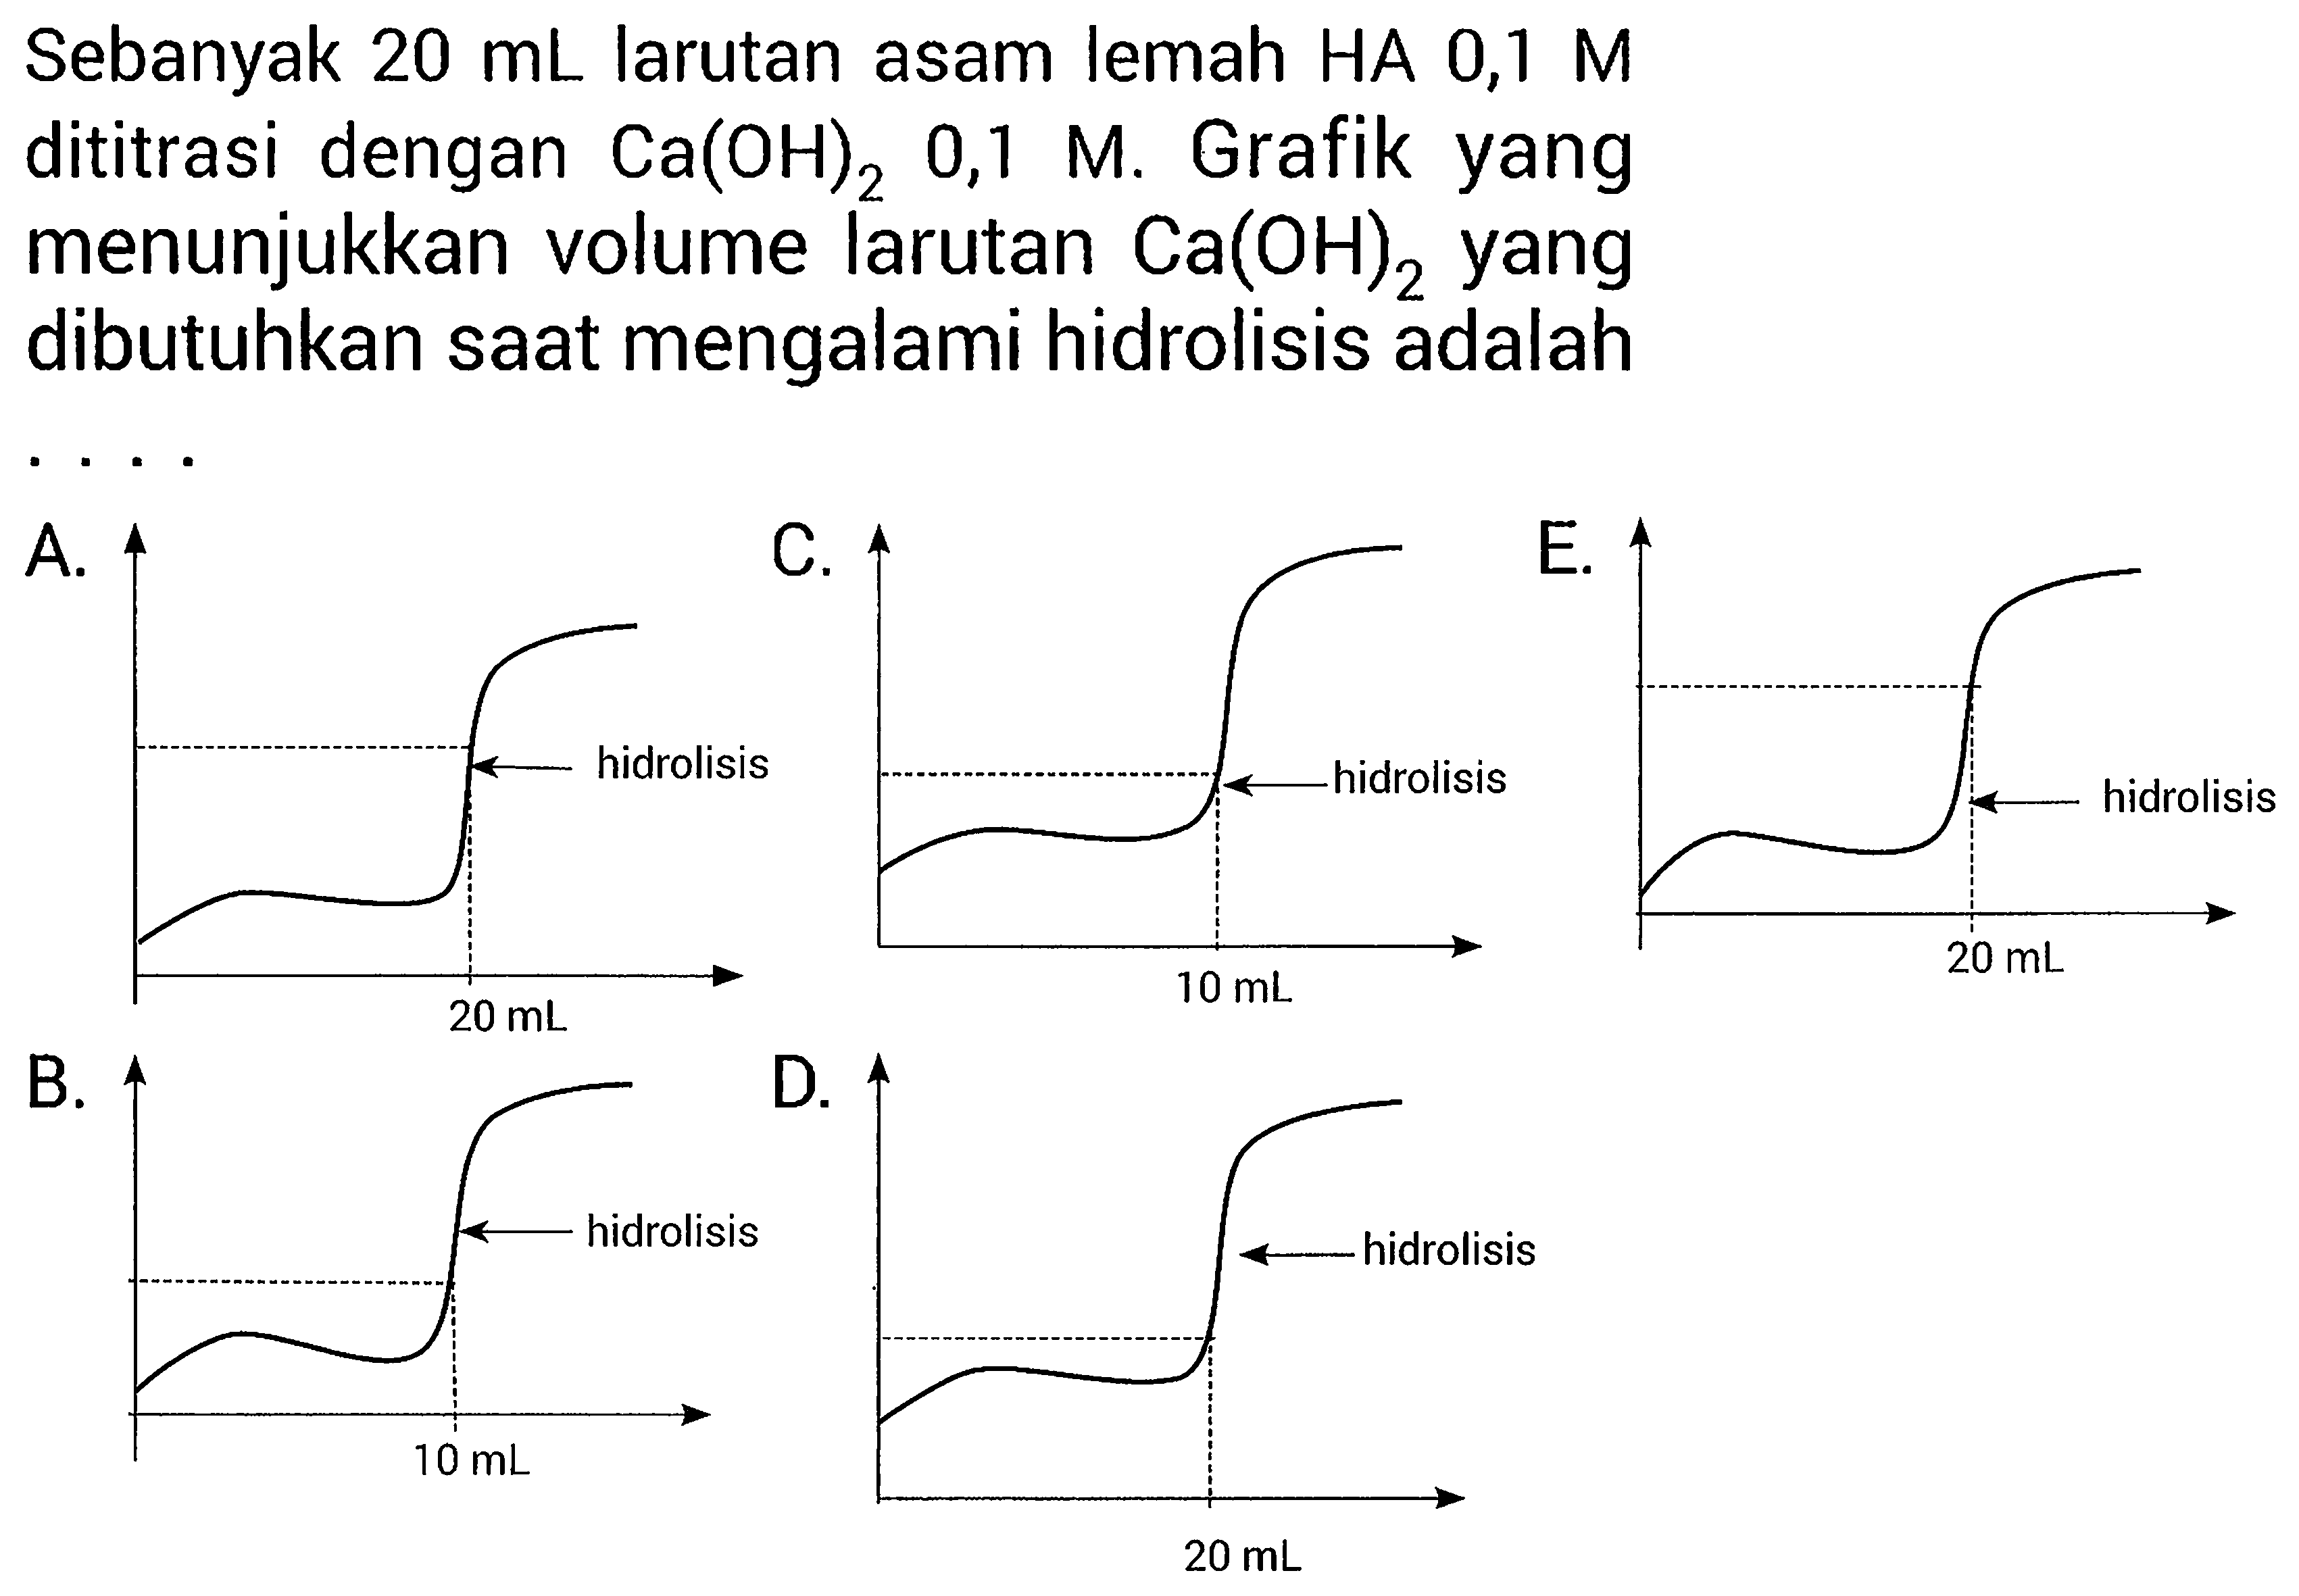 Sebanyak  20 mL  larutan asam lemah  HA 0,1 M  dititrasi dengan  Ca(OH)2  0,1 M. Grafik yang menunjukkan volume larutan  Ca(OH)2  yang dibutuhkan saat mengalami hidrolisis adalah